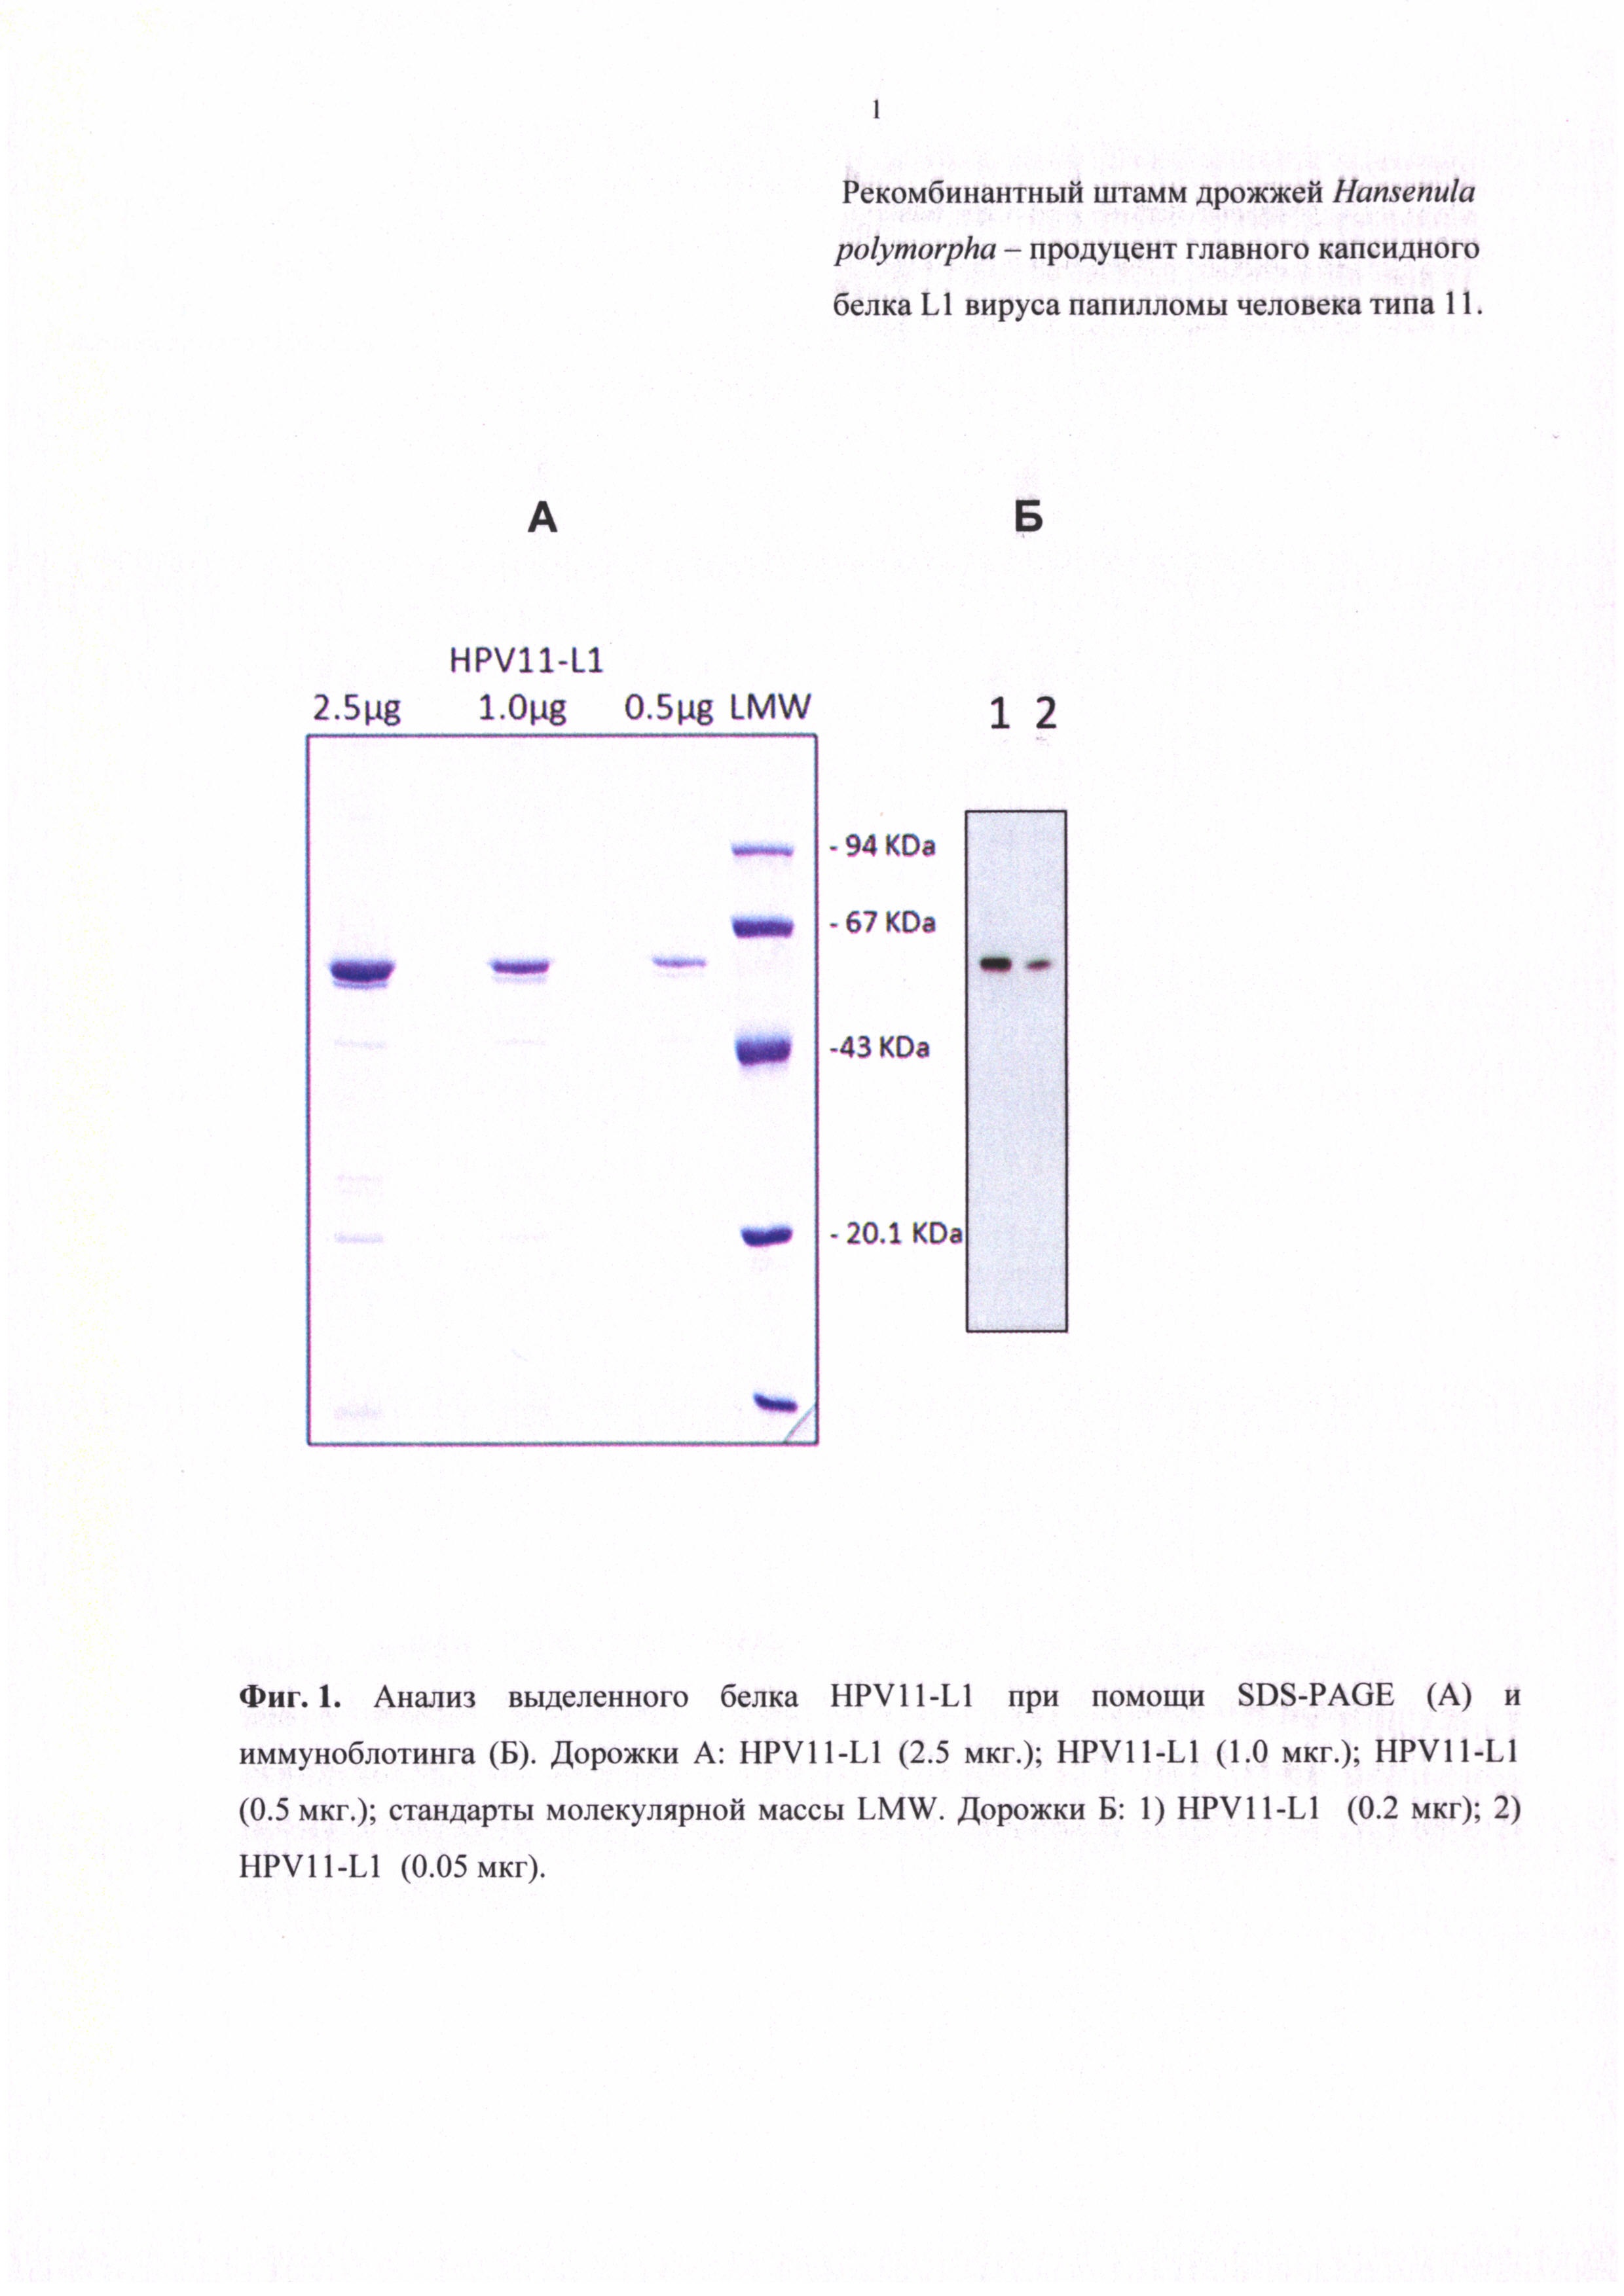 Рекомбинантный штамм дрожжей Hansenula polymorpha - продуцент главного капсидного белка L1 вируса папилломы человека типа 11